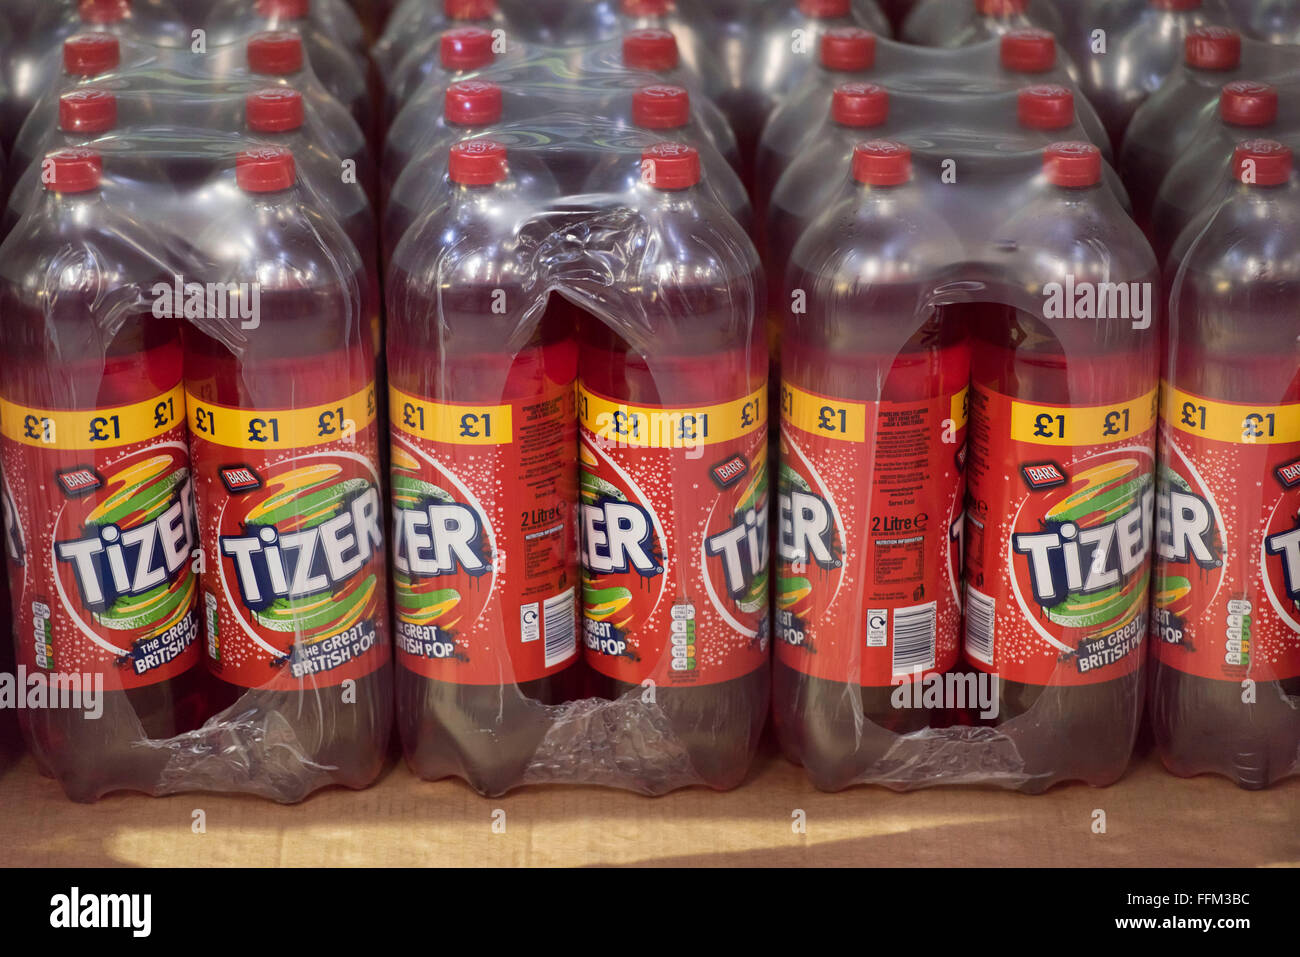 Bottiglie di zucchero di soft drink Tizer stoccati in un magazzino. Foto Stock